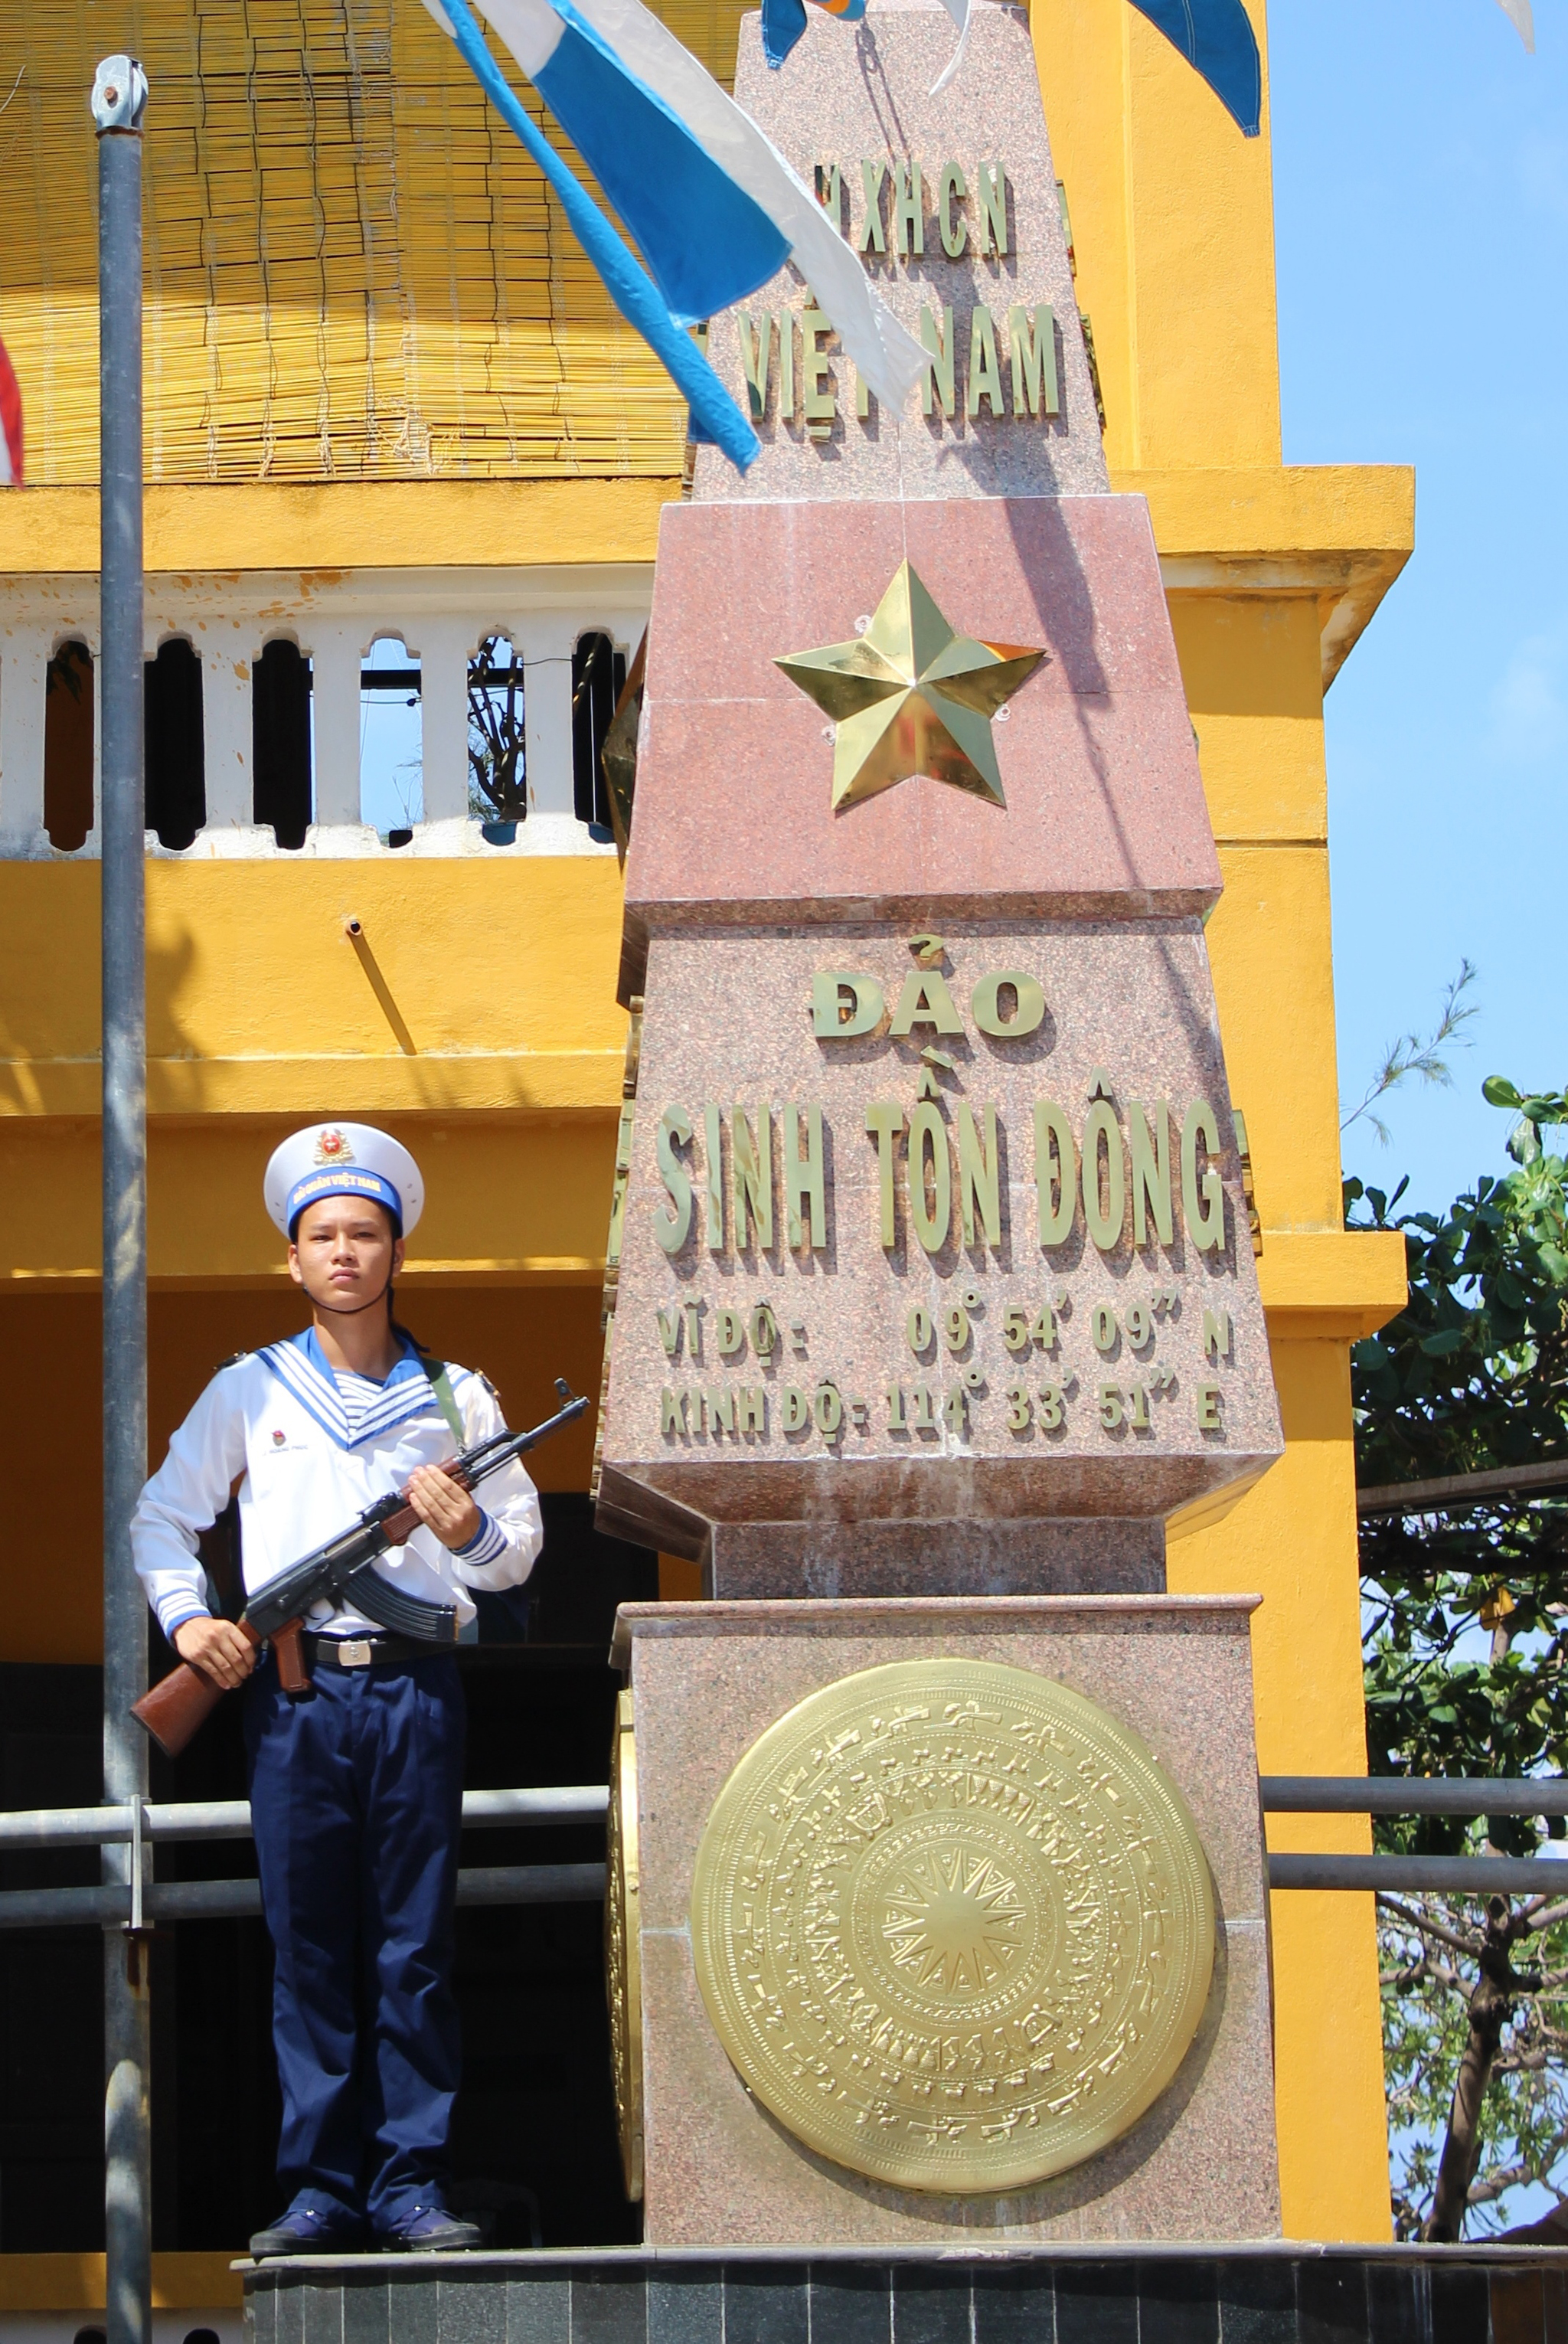 Trường Sa vùng đất thiêng liêng giữa biển trời mãi vững bền, mãi là một phần máu thịt của dân tộc Việt Nam